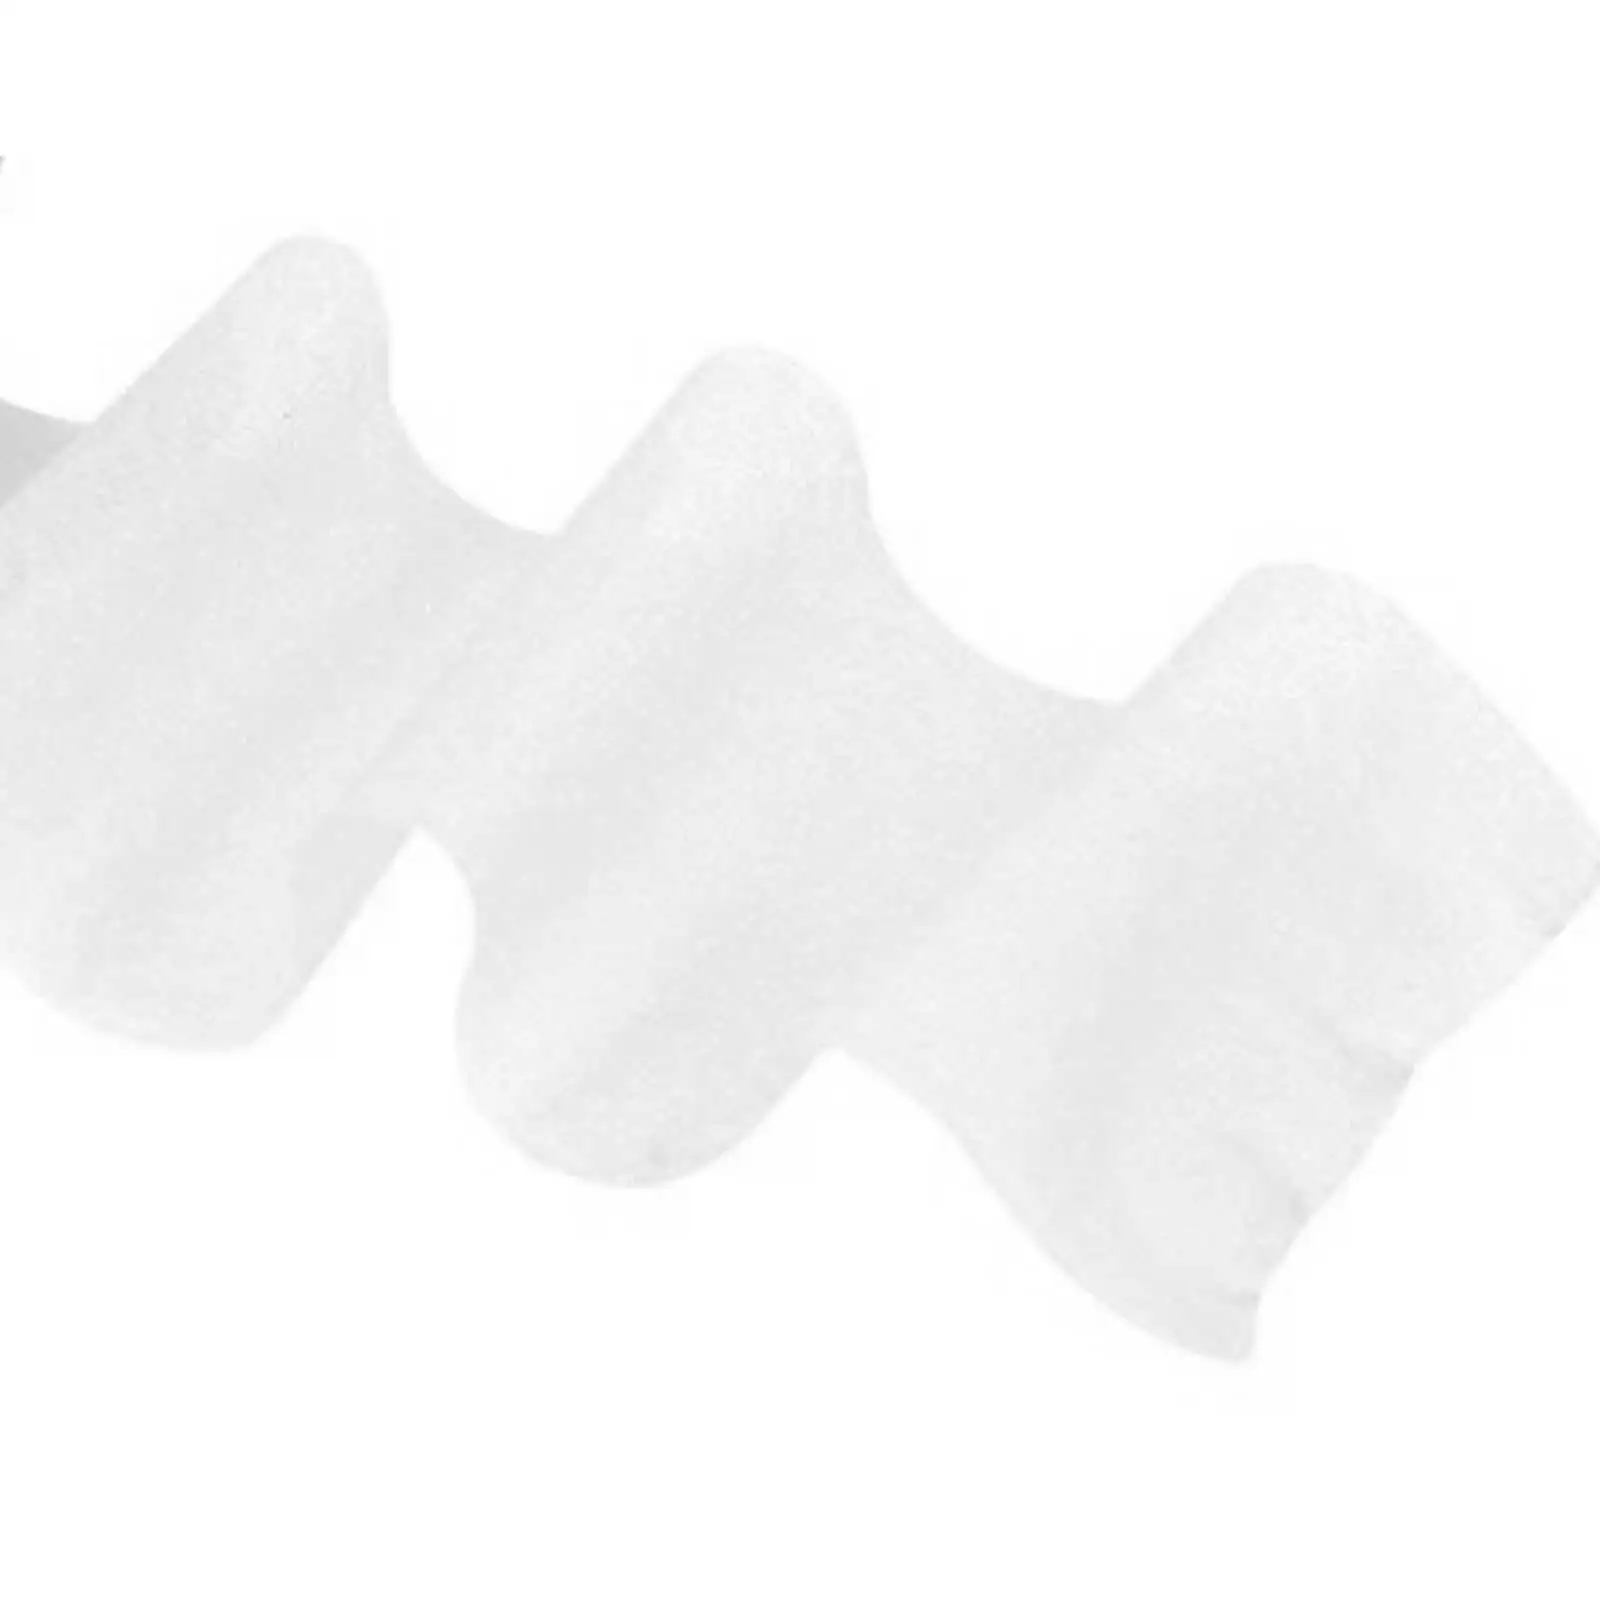 

2/3/5 спортивная повязка, воздухопроницаемая самоклеящаяся эластичная повязка для рук, цвет белый, ширина 2, 5 см